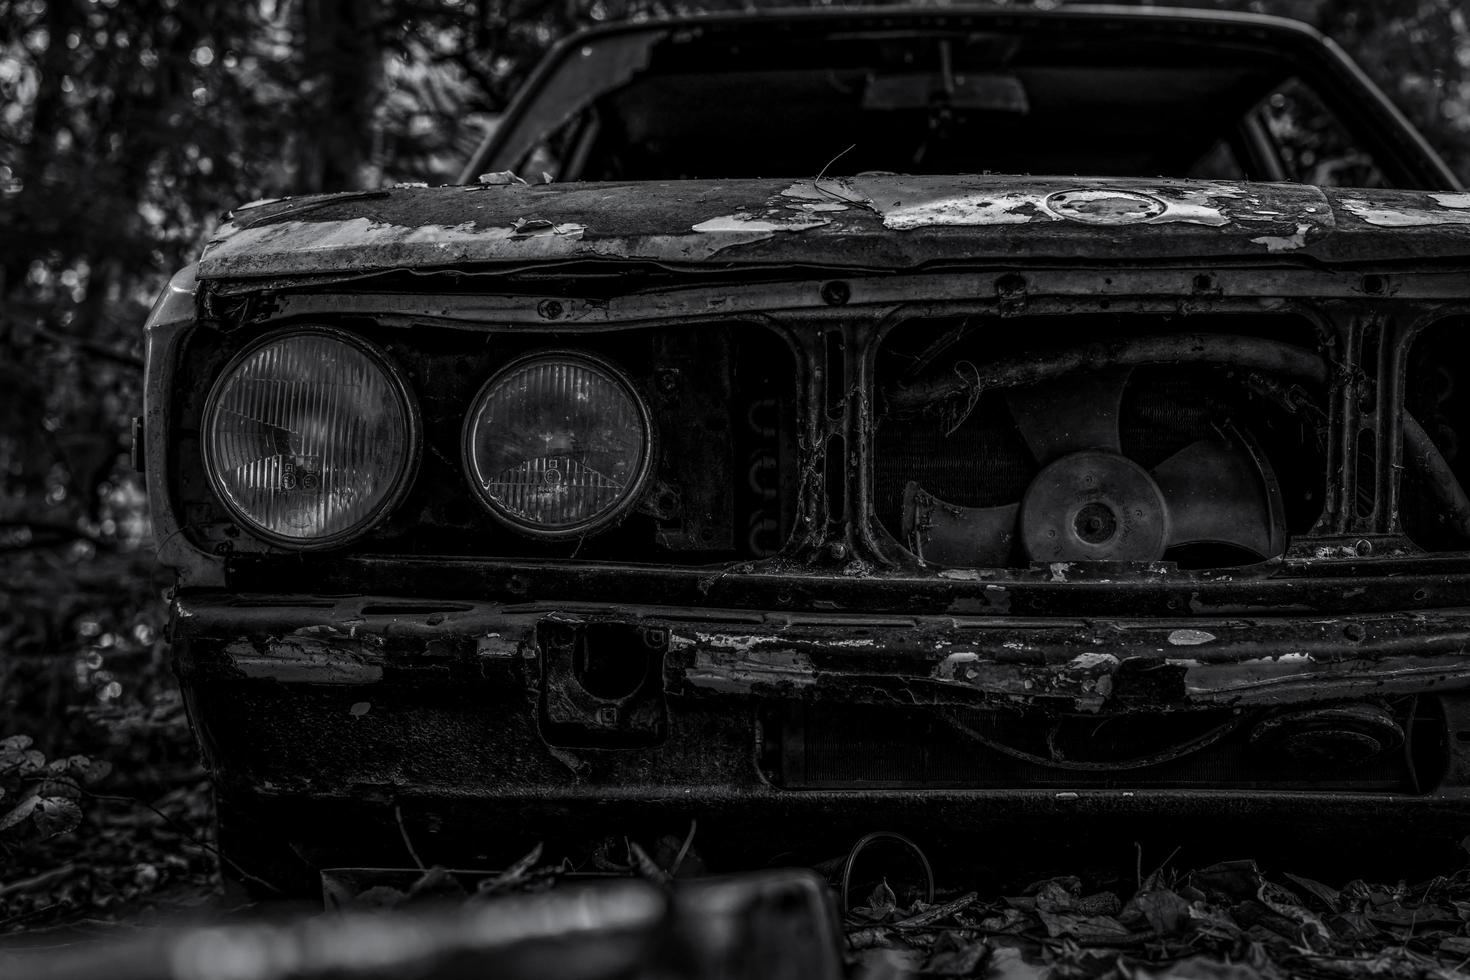 viejo coche destrozado en escena en blanco y negro. coche oxidado abandonado en el bosque. Vista frontal de primer plano del coche abandonado destrozado y oxidado. el arte del auto usado abandonado. tragedia y pérdida. tristeza foto